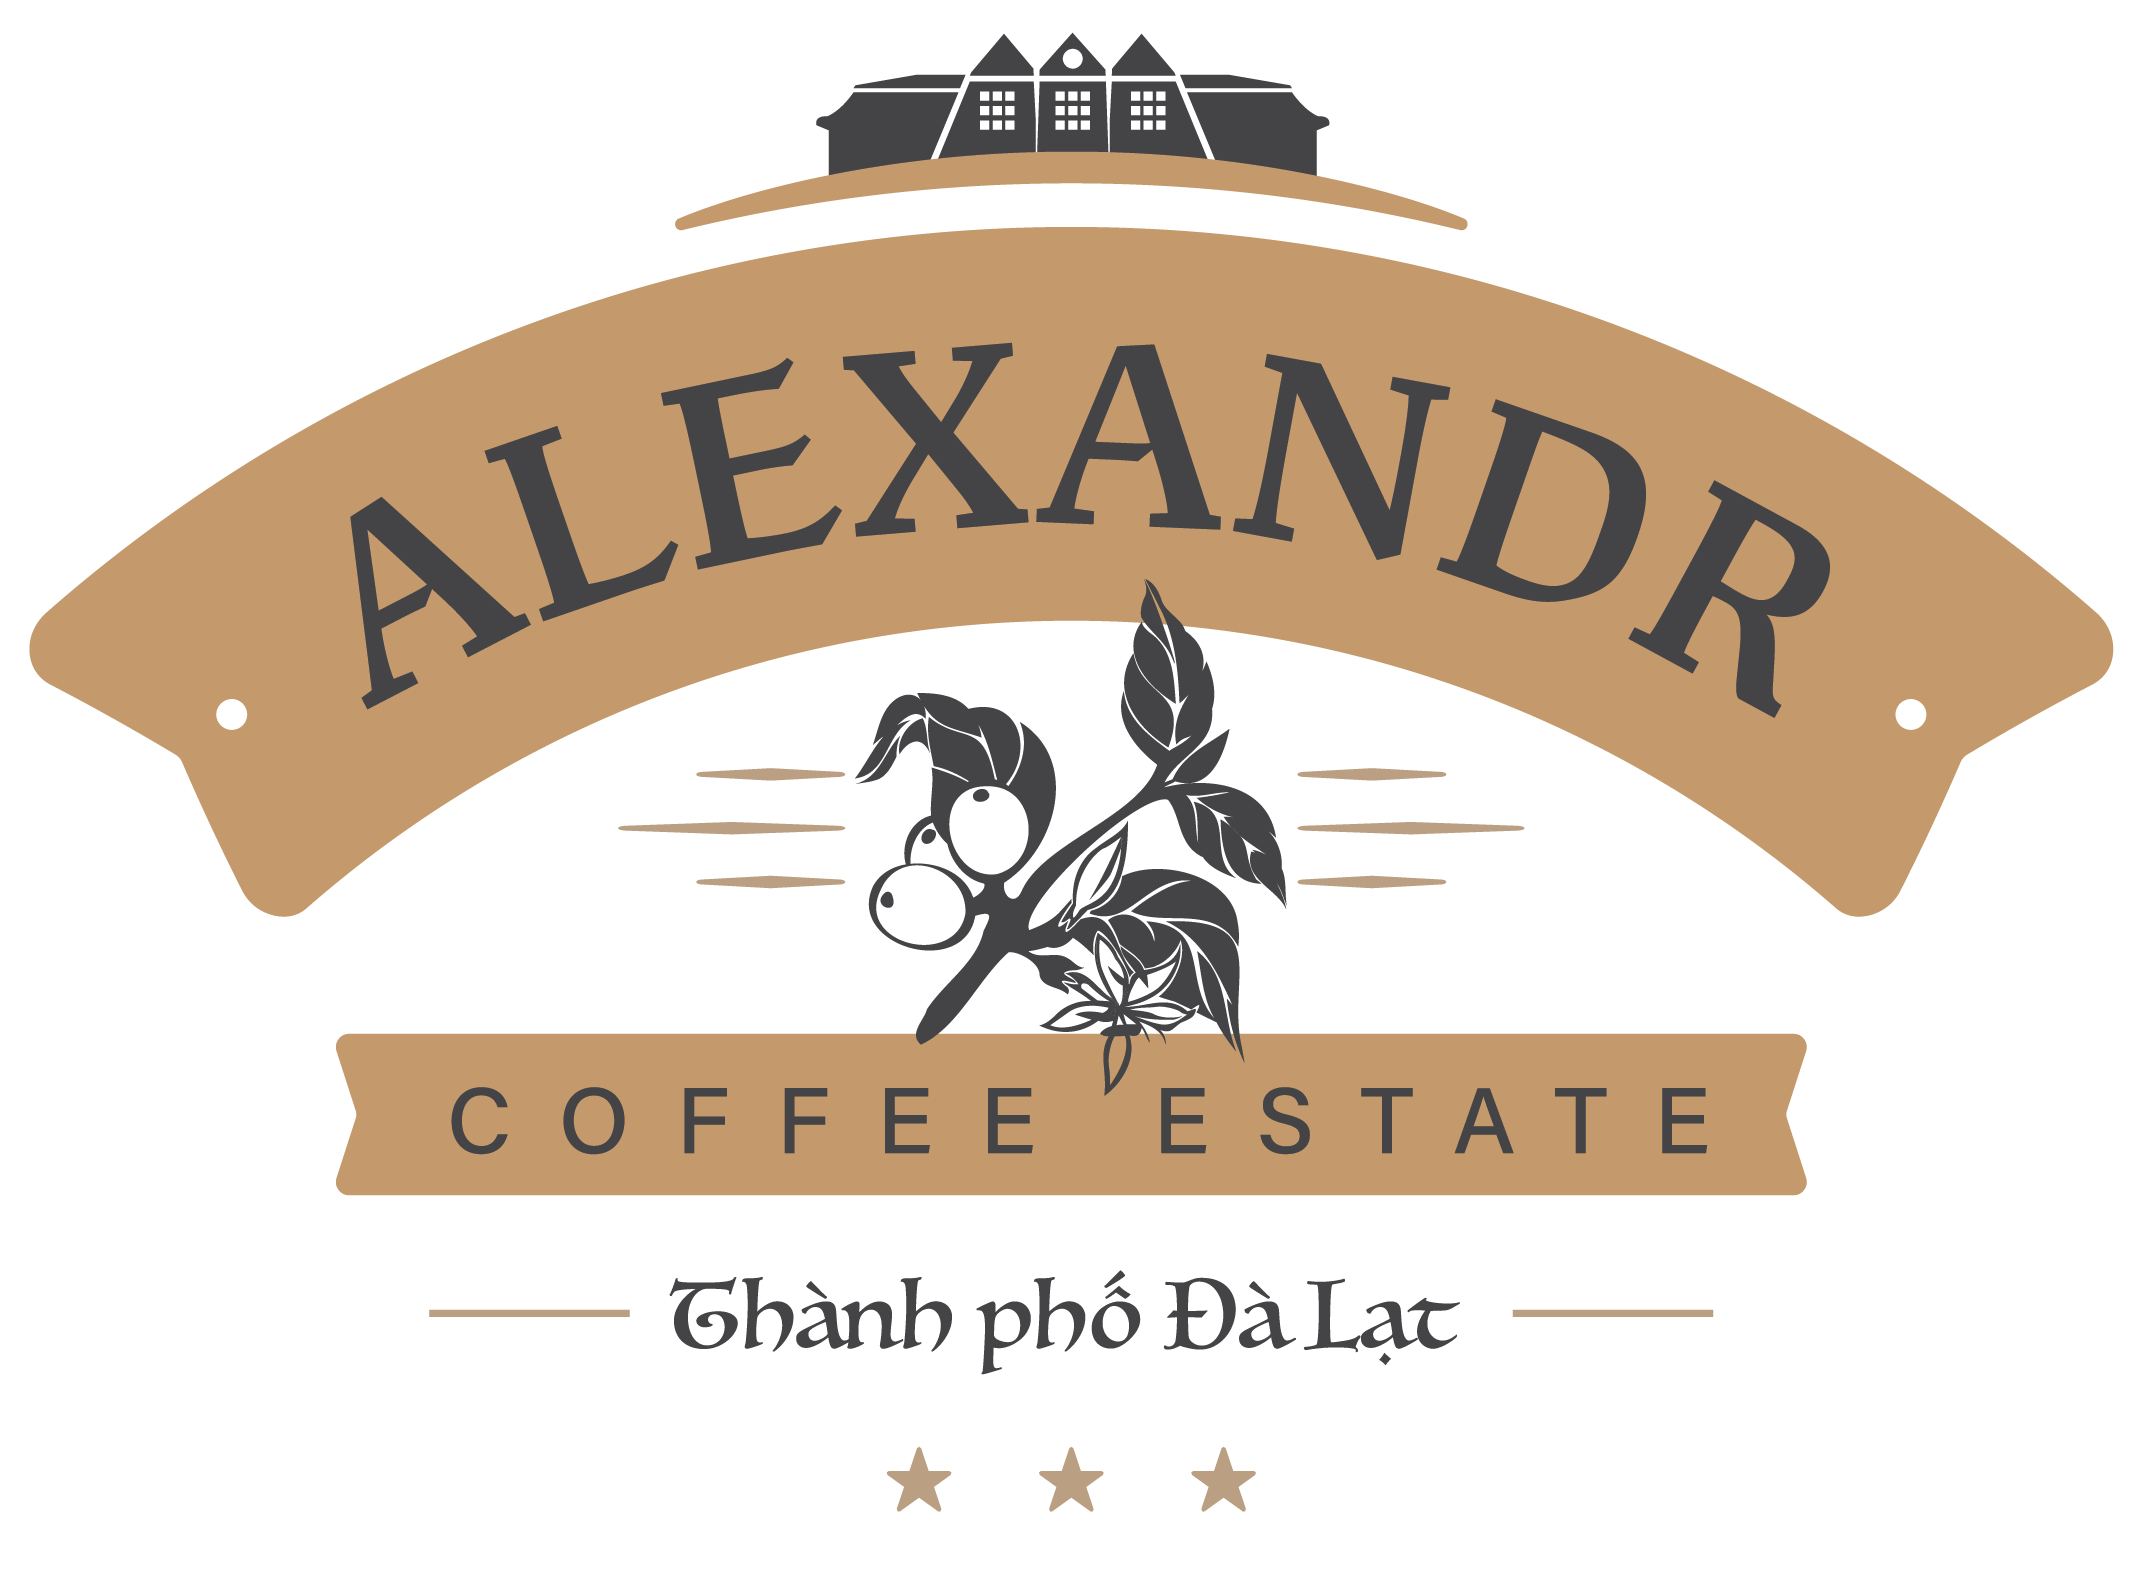 亞力山大咖啡莊園 Alexandr Coffee Estate [官方網站]